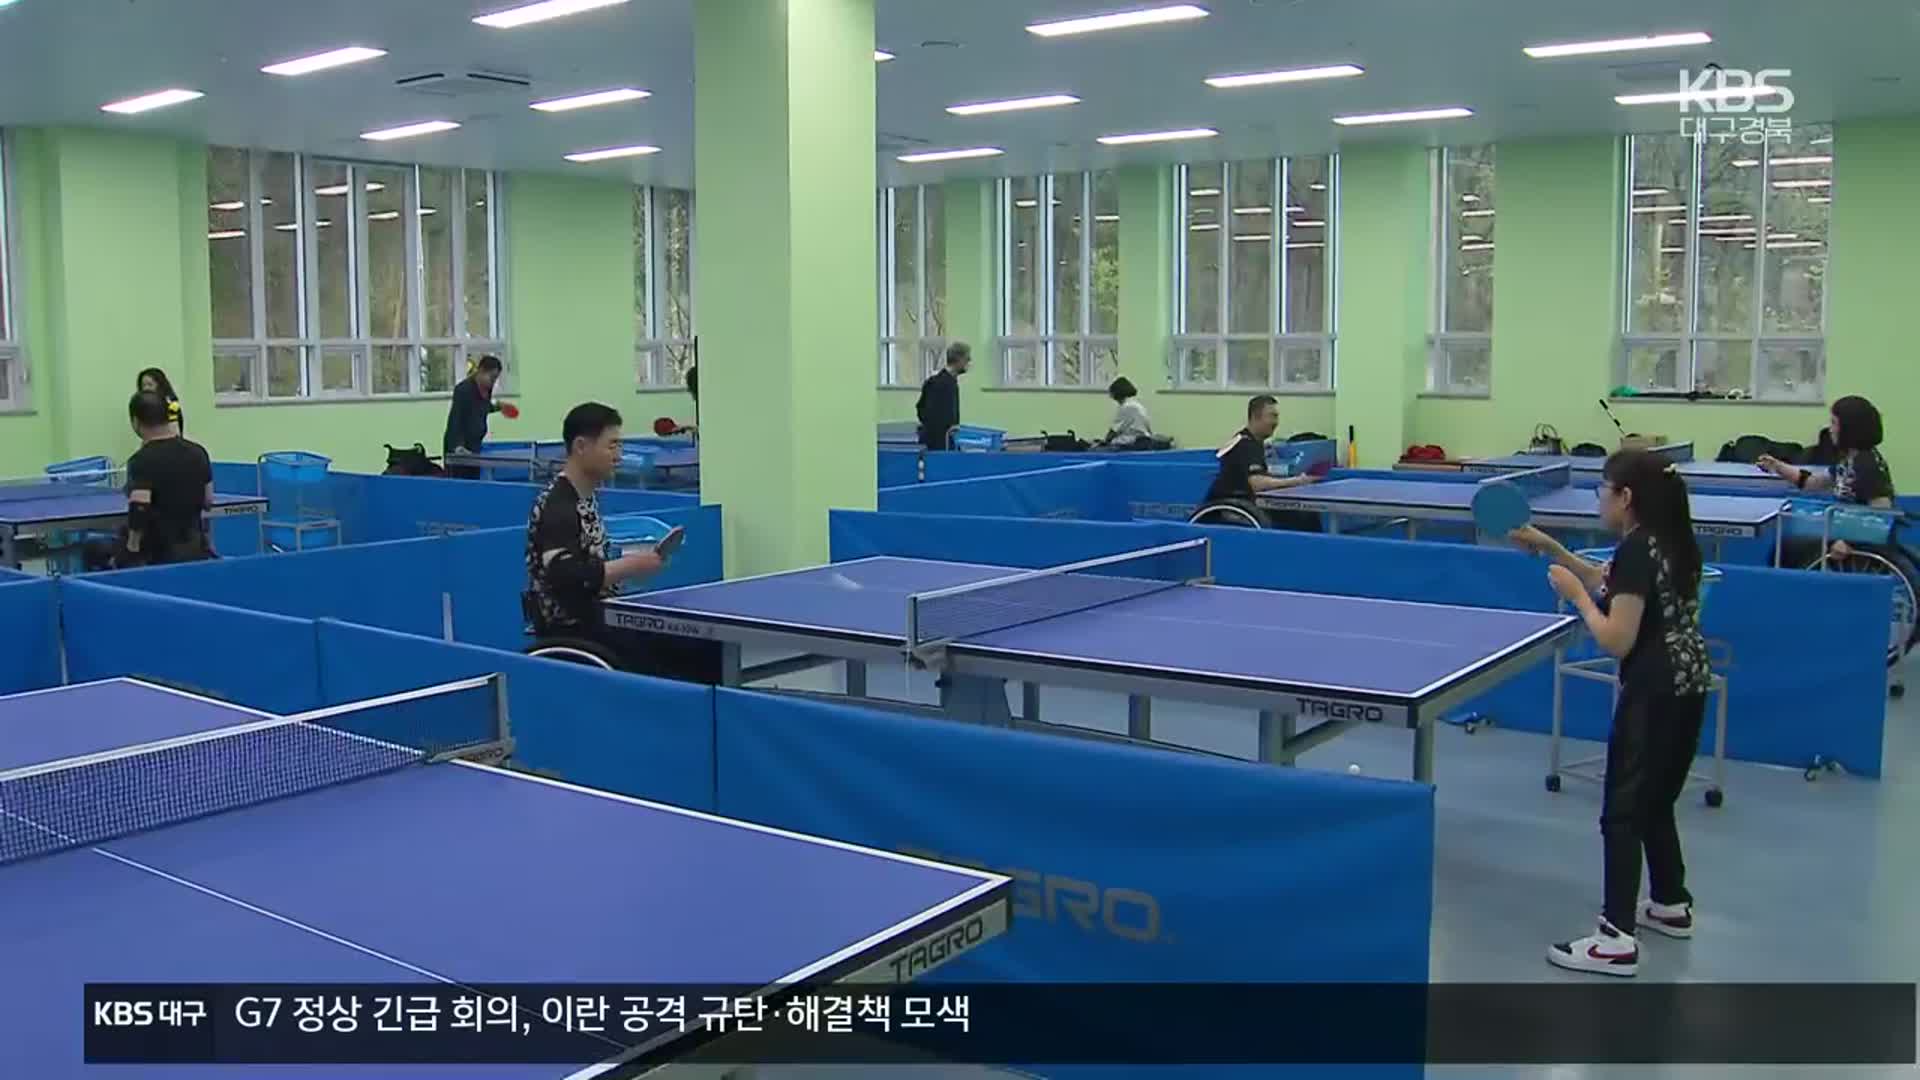 대구·경북 첫 장애인 체육시설 ‘반다비센터’ 개관